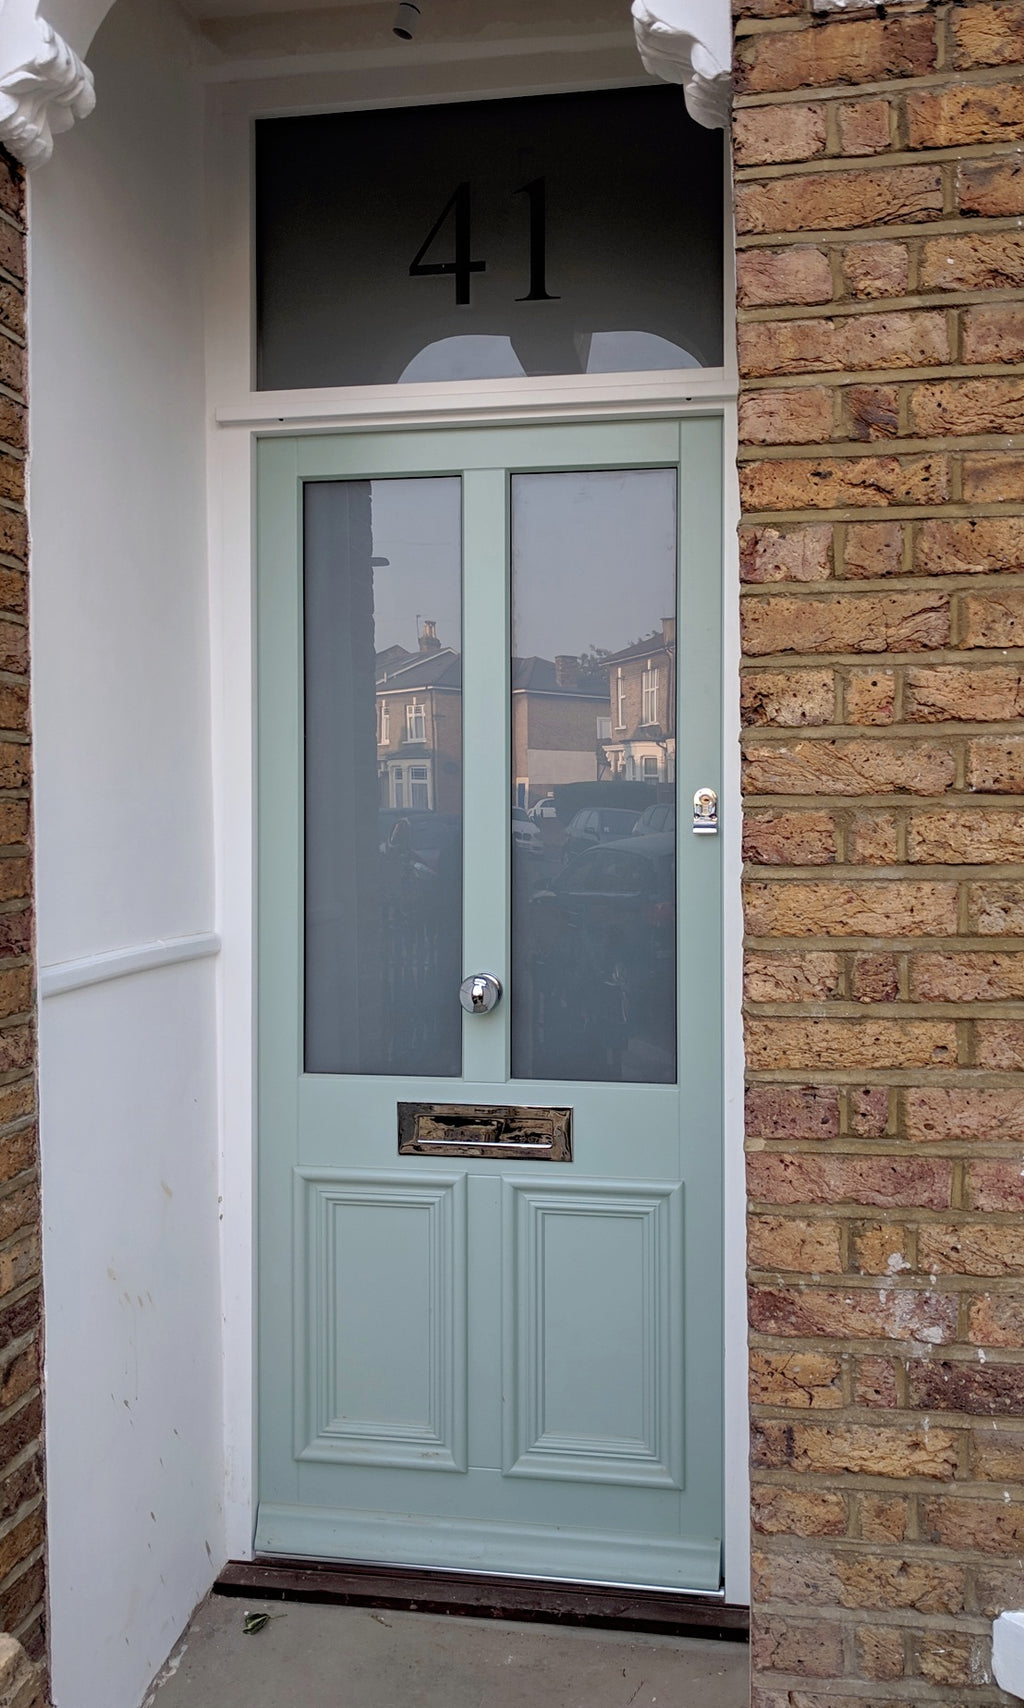 Bespoke Victorian external glazed timber door and fanlight